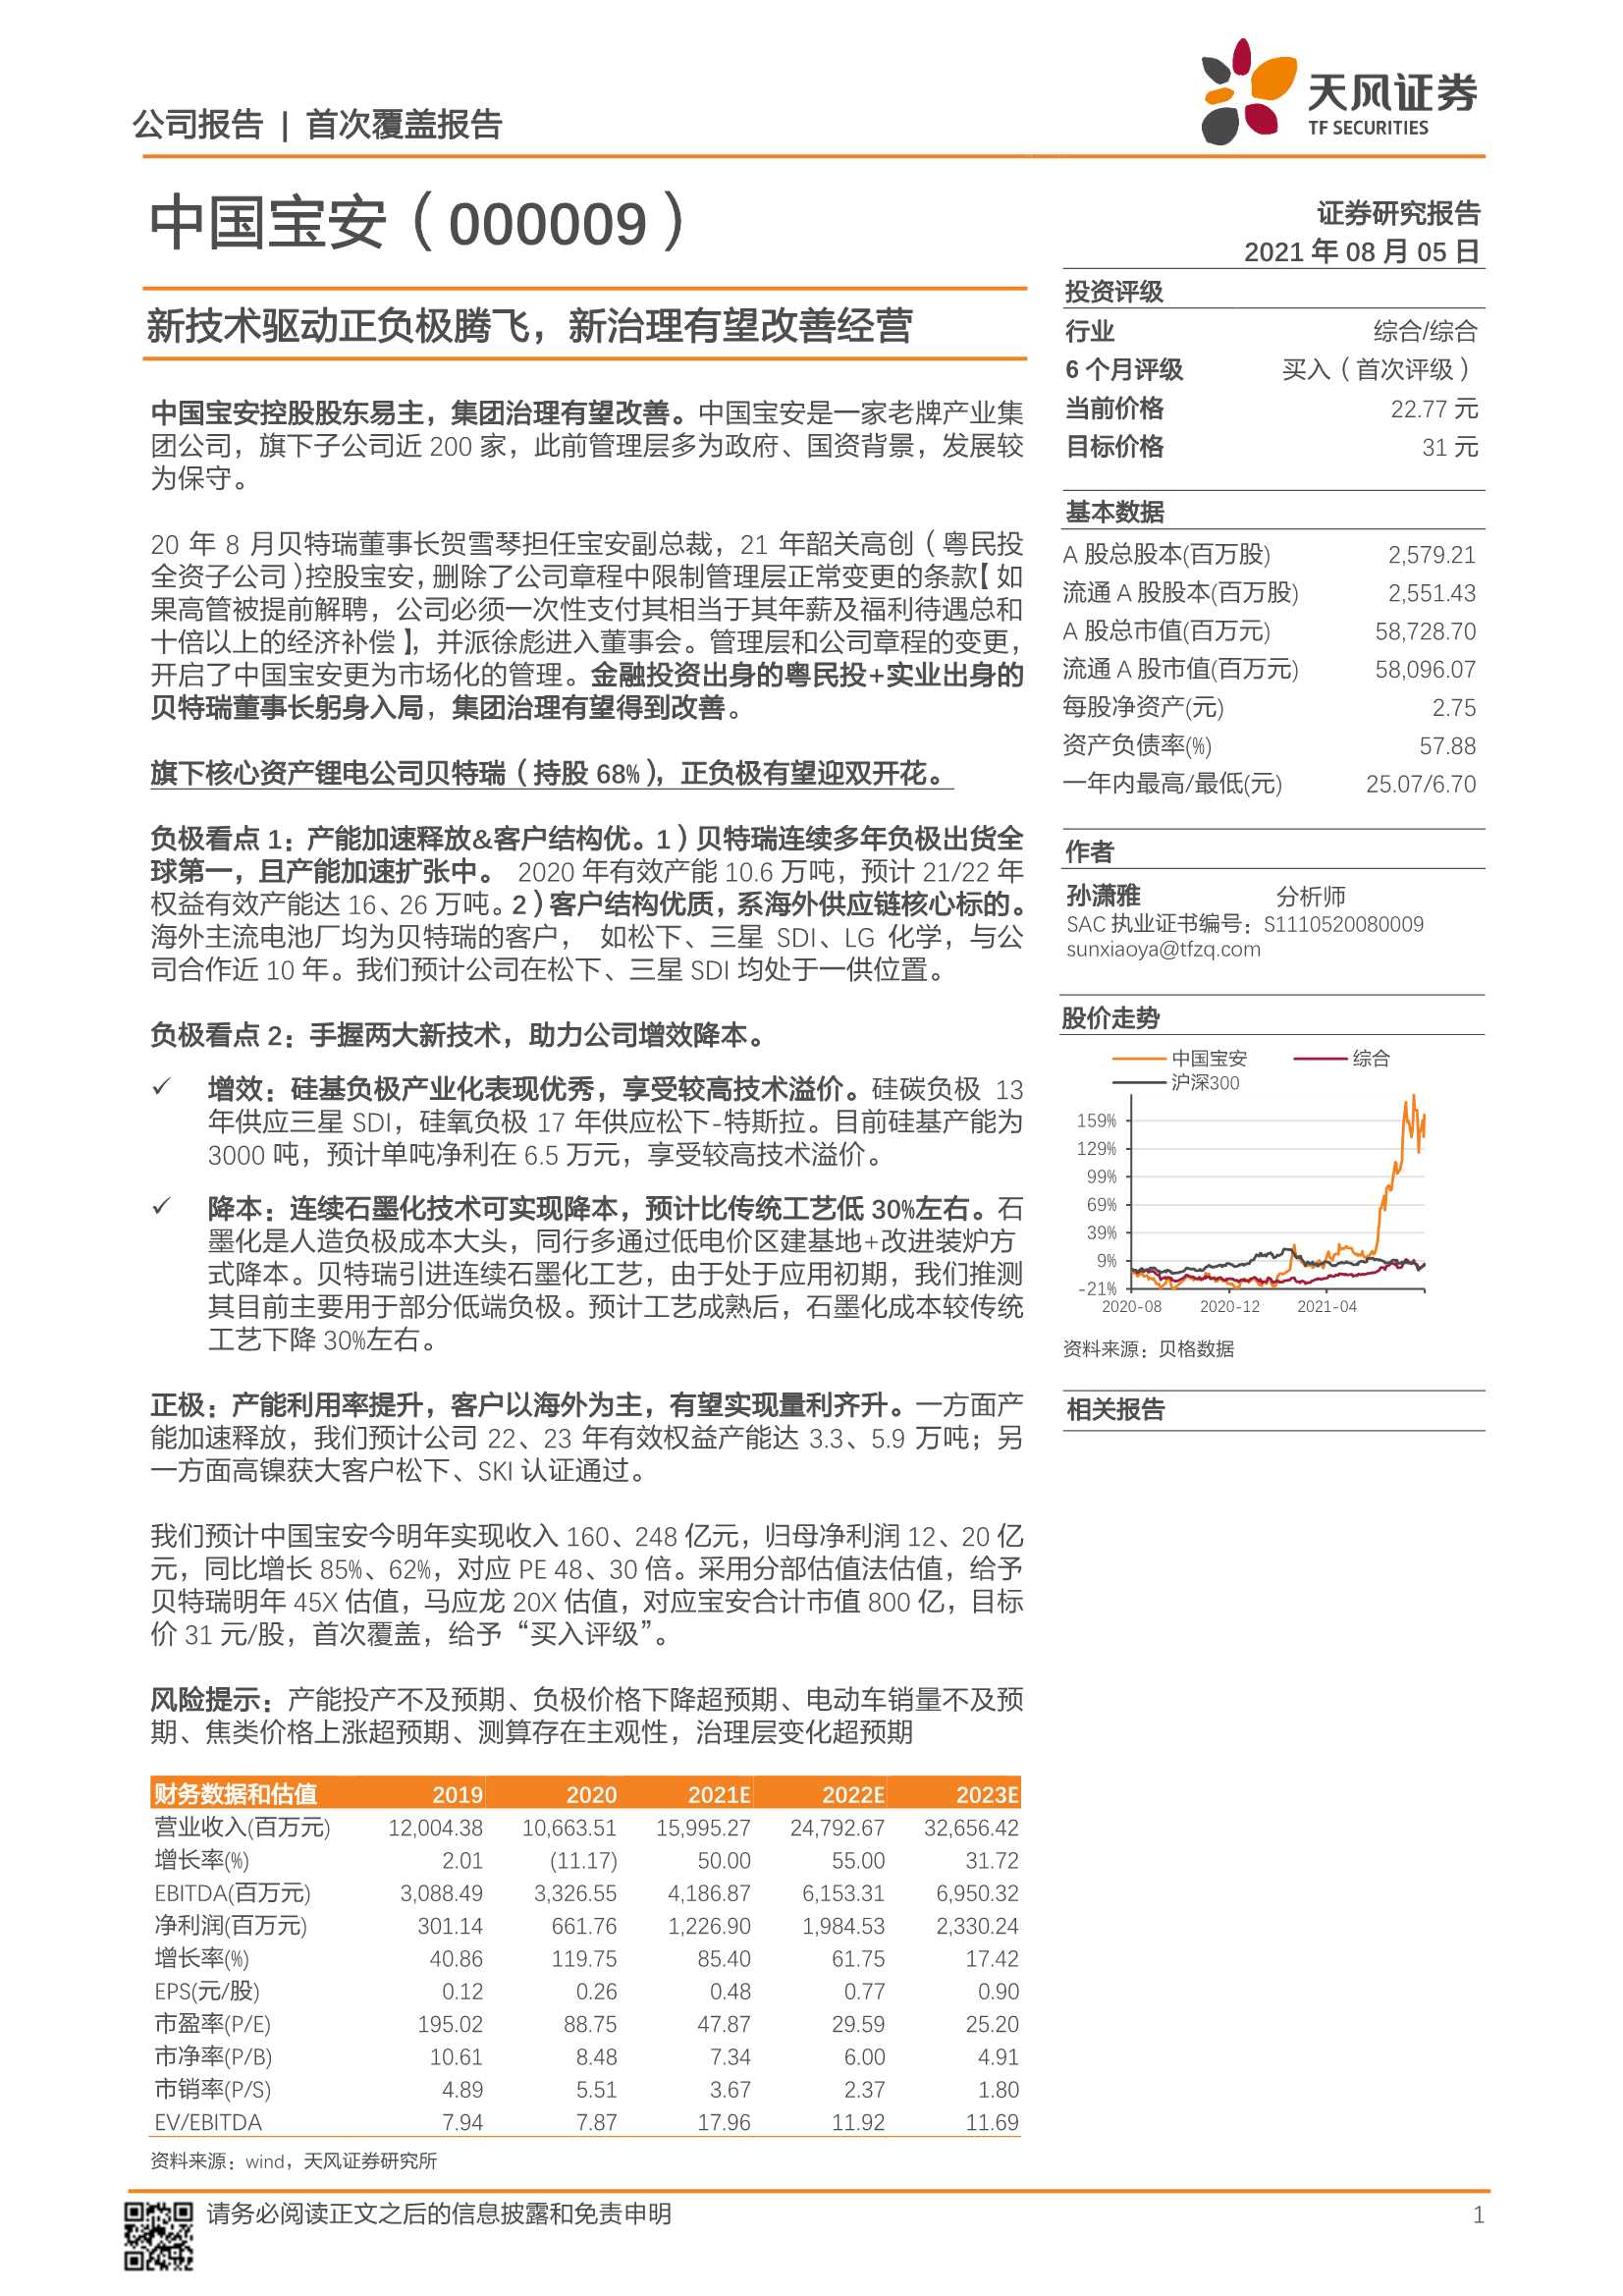 天风证券-中国宝安-000009-首次覆盖报告：新技术驱动正负极腾飞，新治理有望改善经营-20210805-28页